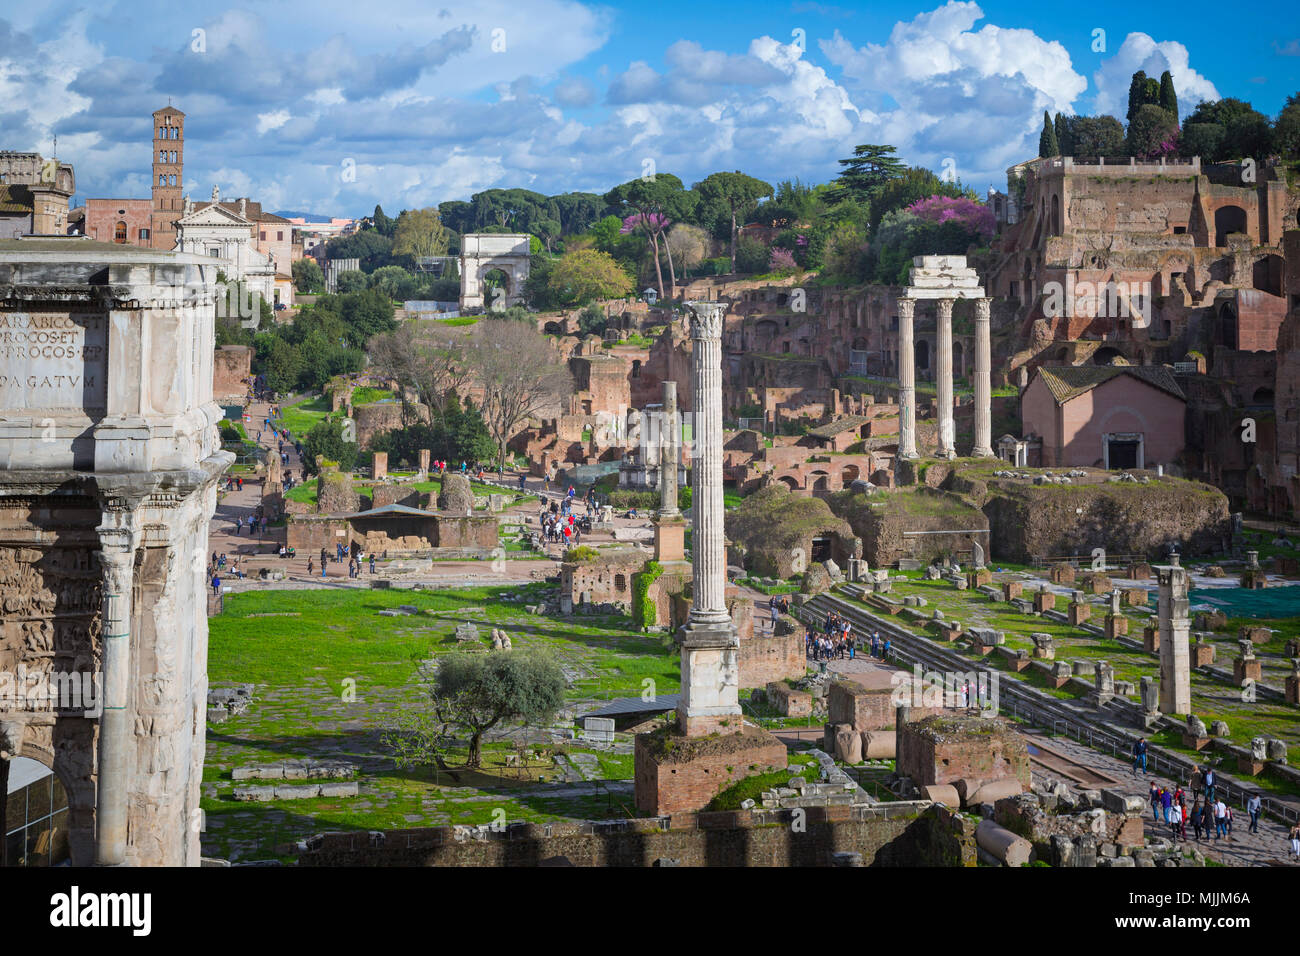 Rome, Italie. Vue d'ensemble sur le Forum Romain. Ce forum s'inscrit dans le centre historique de Rome qui est un UNESCO World Heritage Site. Banque D'Images